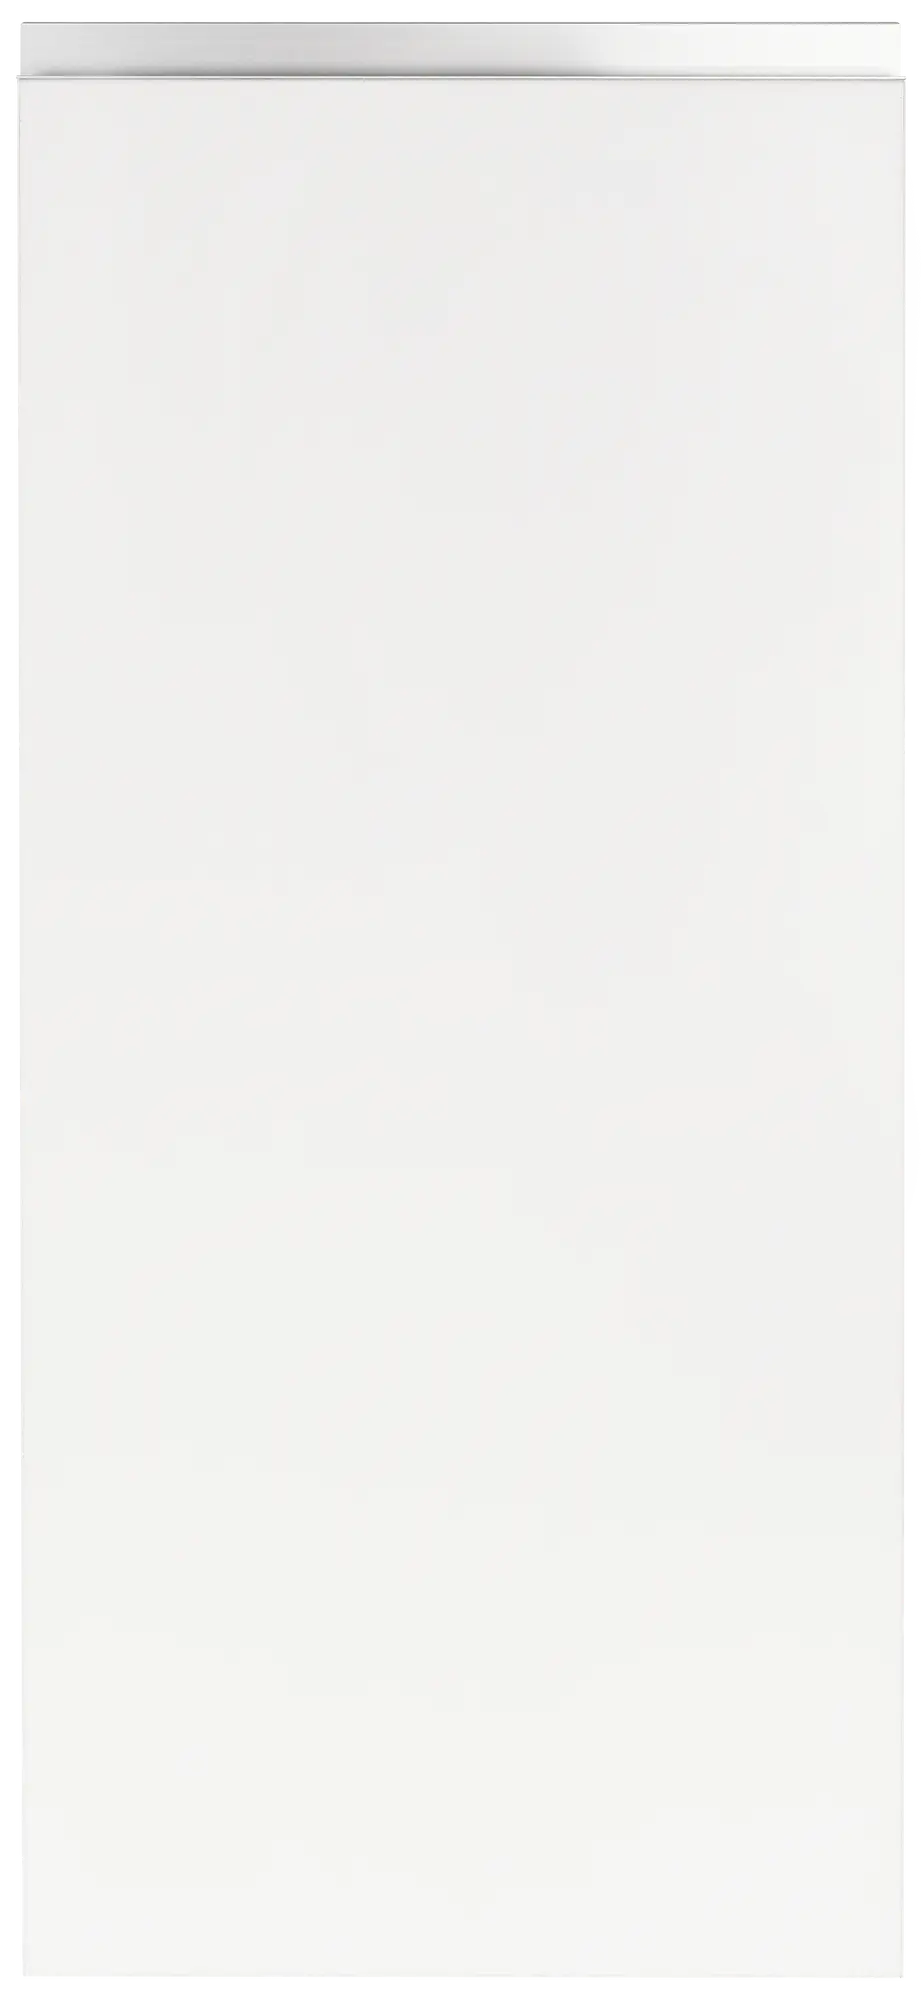 Puerta para mueble cocina mikonos blanco brillo 29,7x76,5 cm